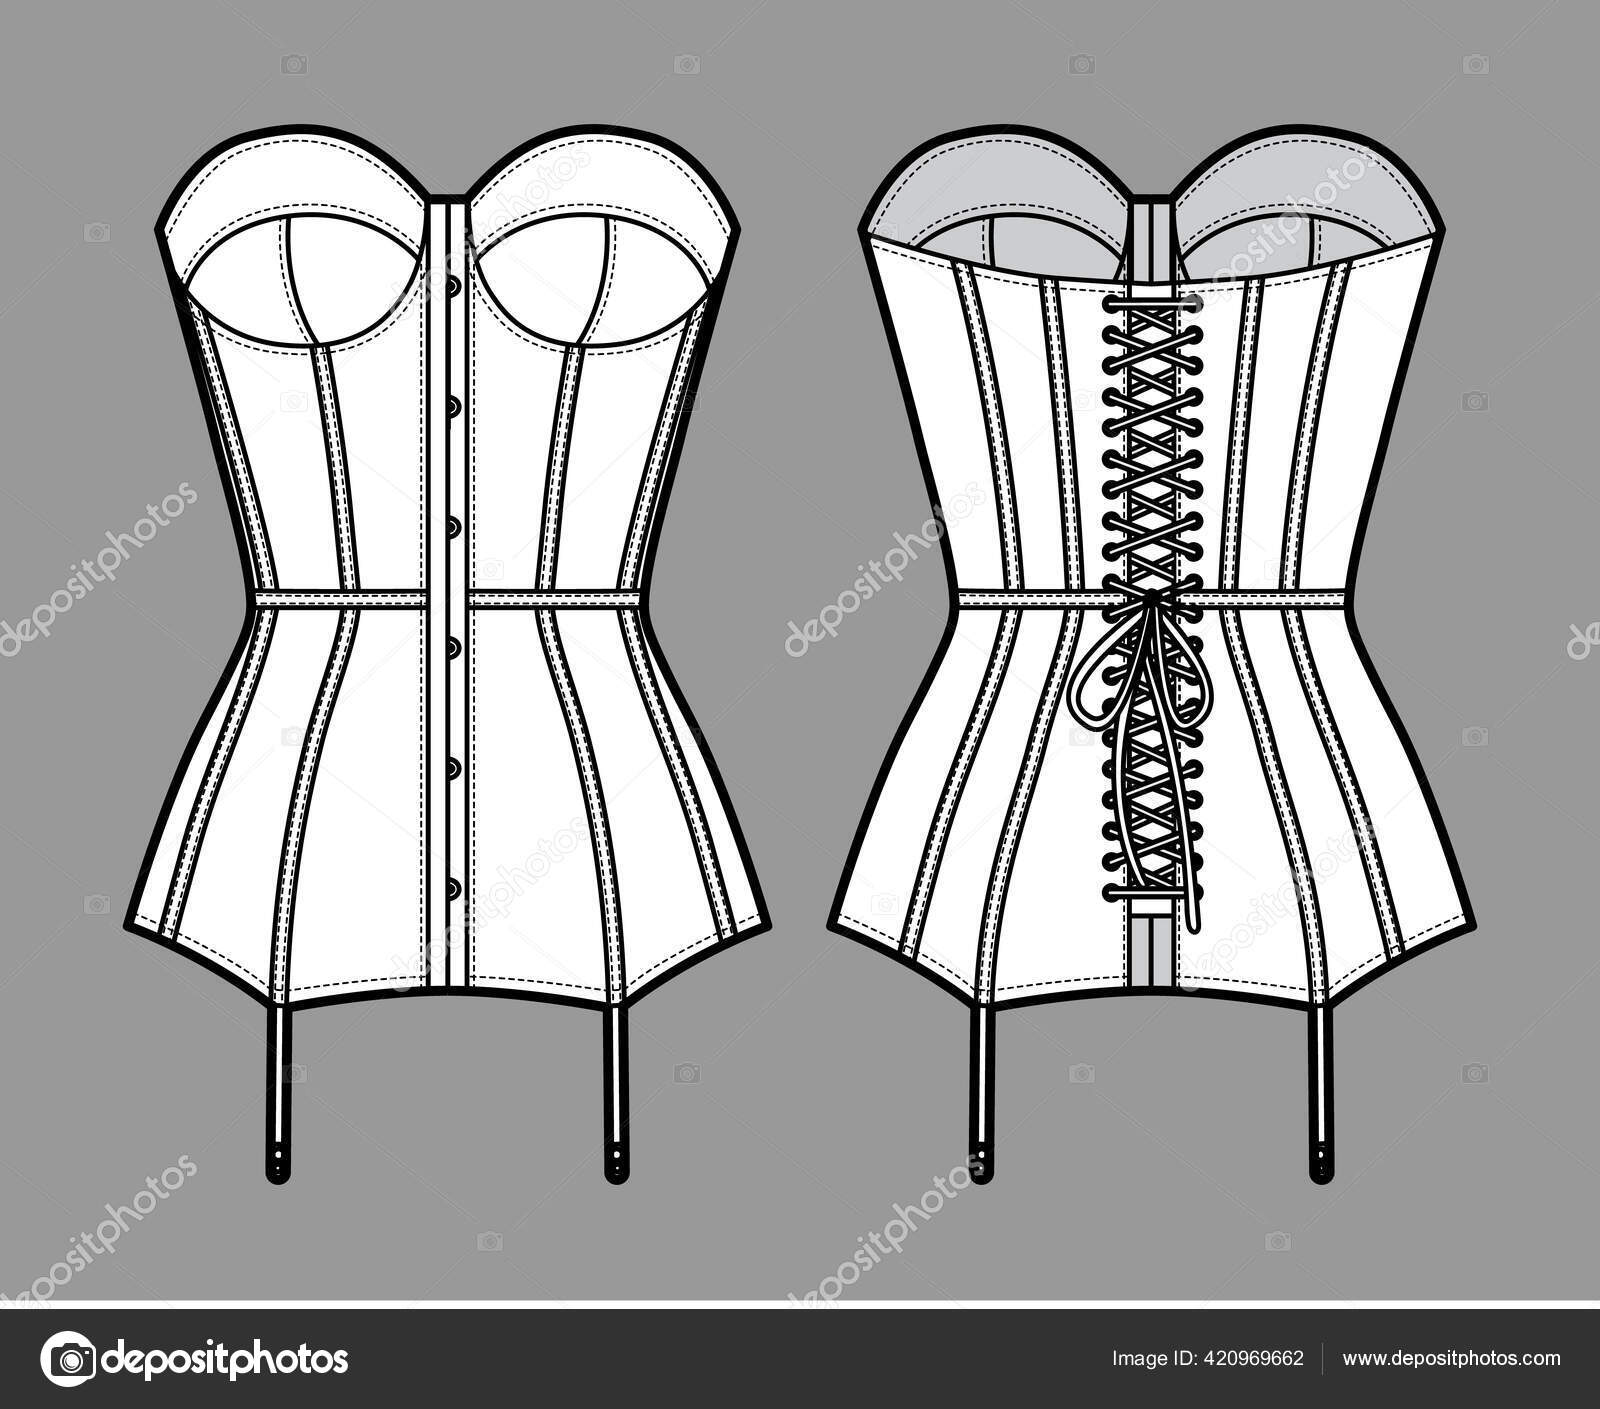 Torsolette basque bustier lingerie technical fashion illustration